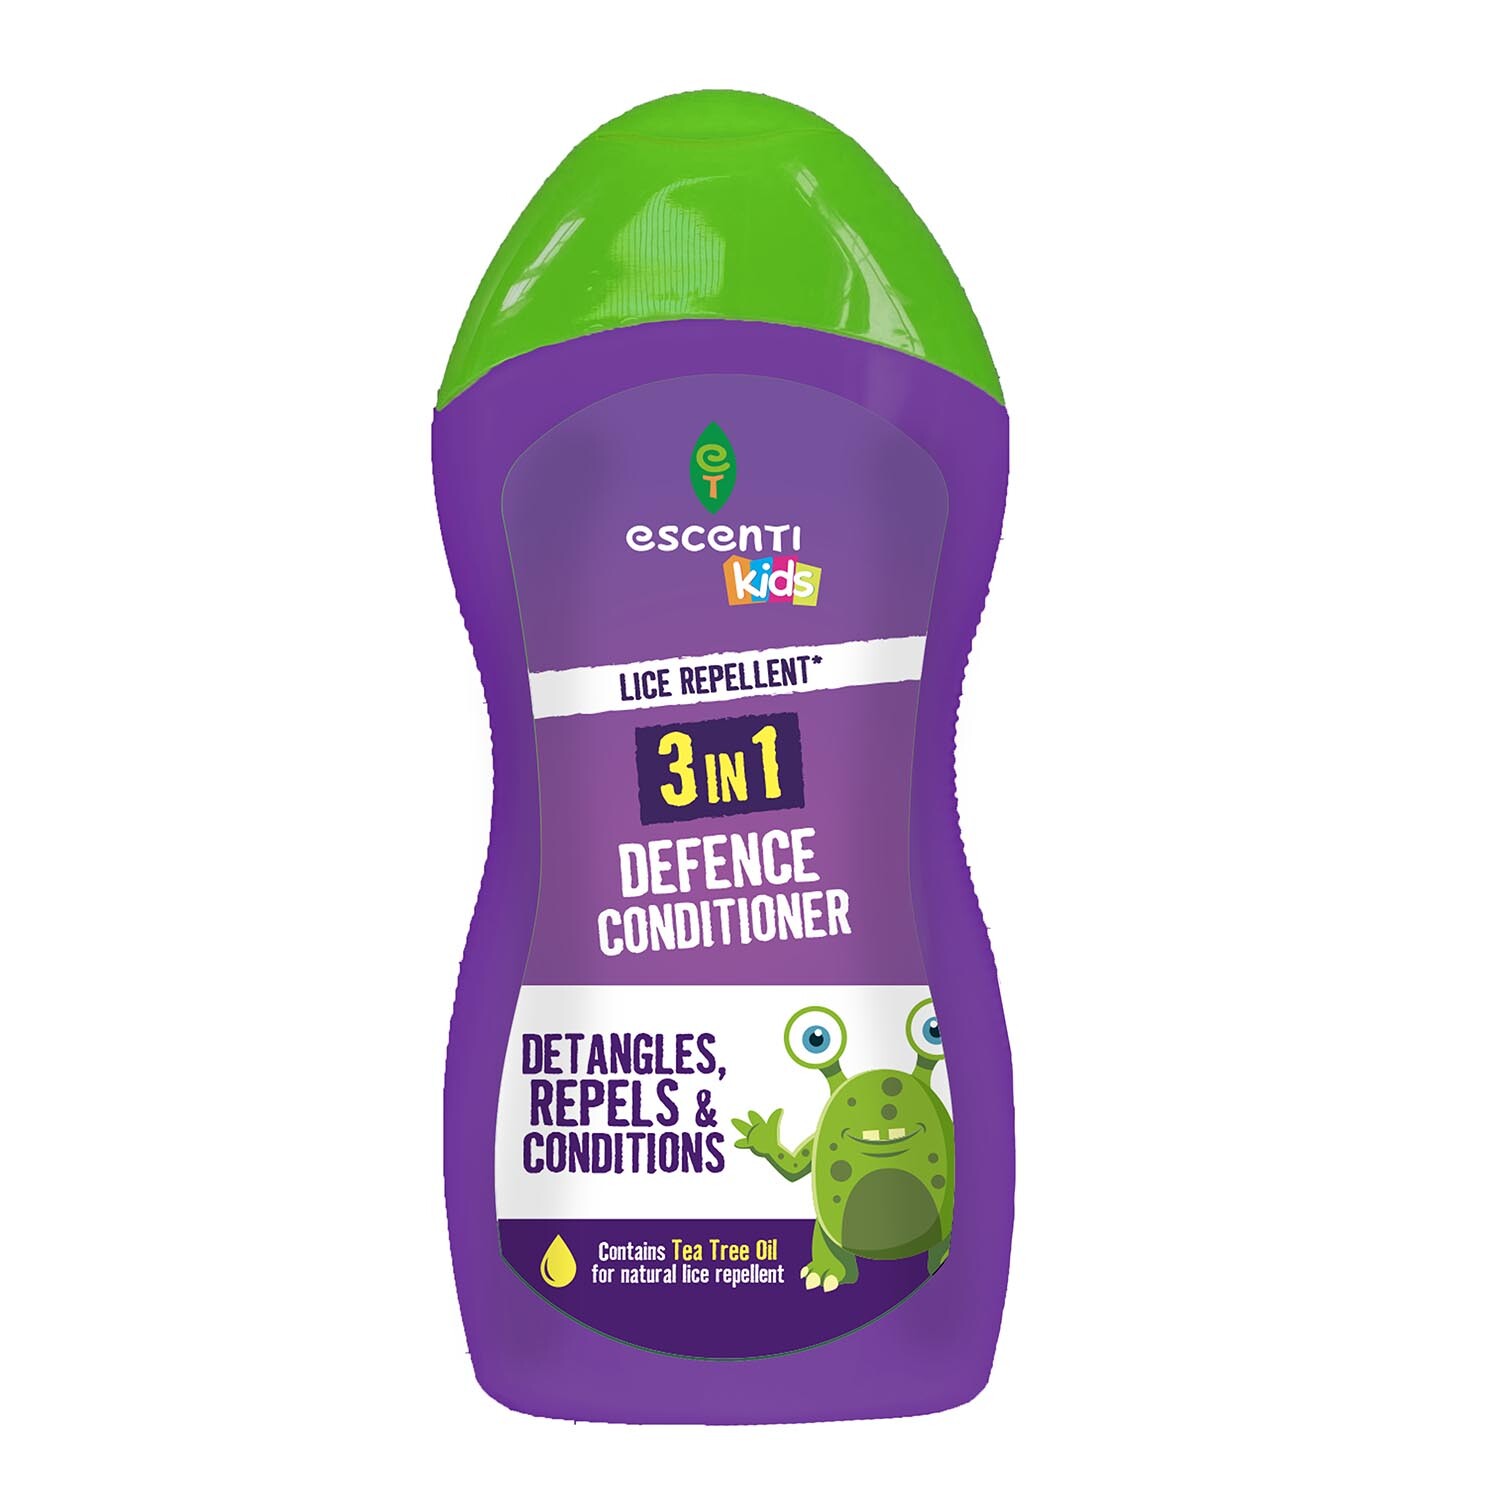 Escenti Kids Lice Repellent 3-in-1 Defence Conditioner - Purple Image